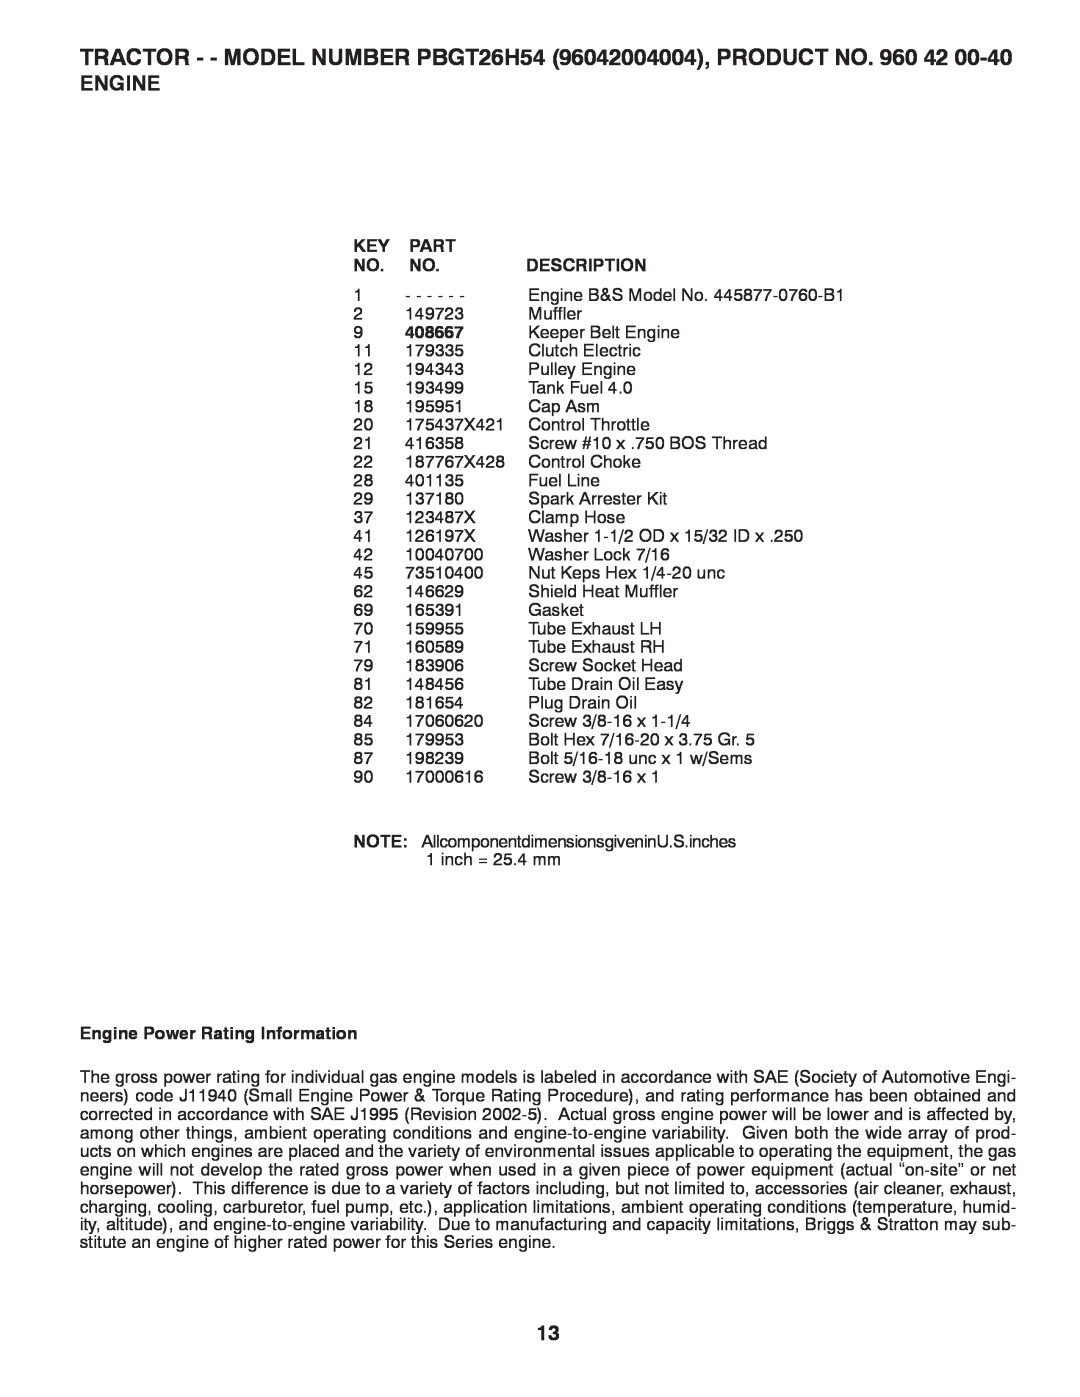 Poulan PBGT26H54 manual 408667, Engine Power Rating Information, Part, Description 